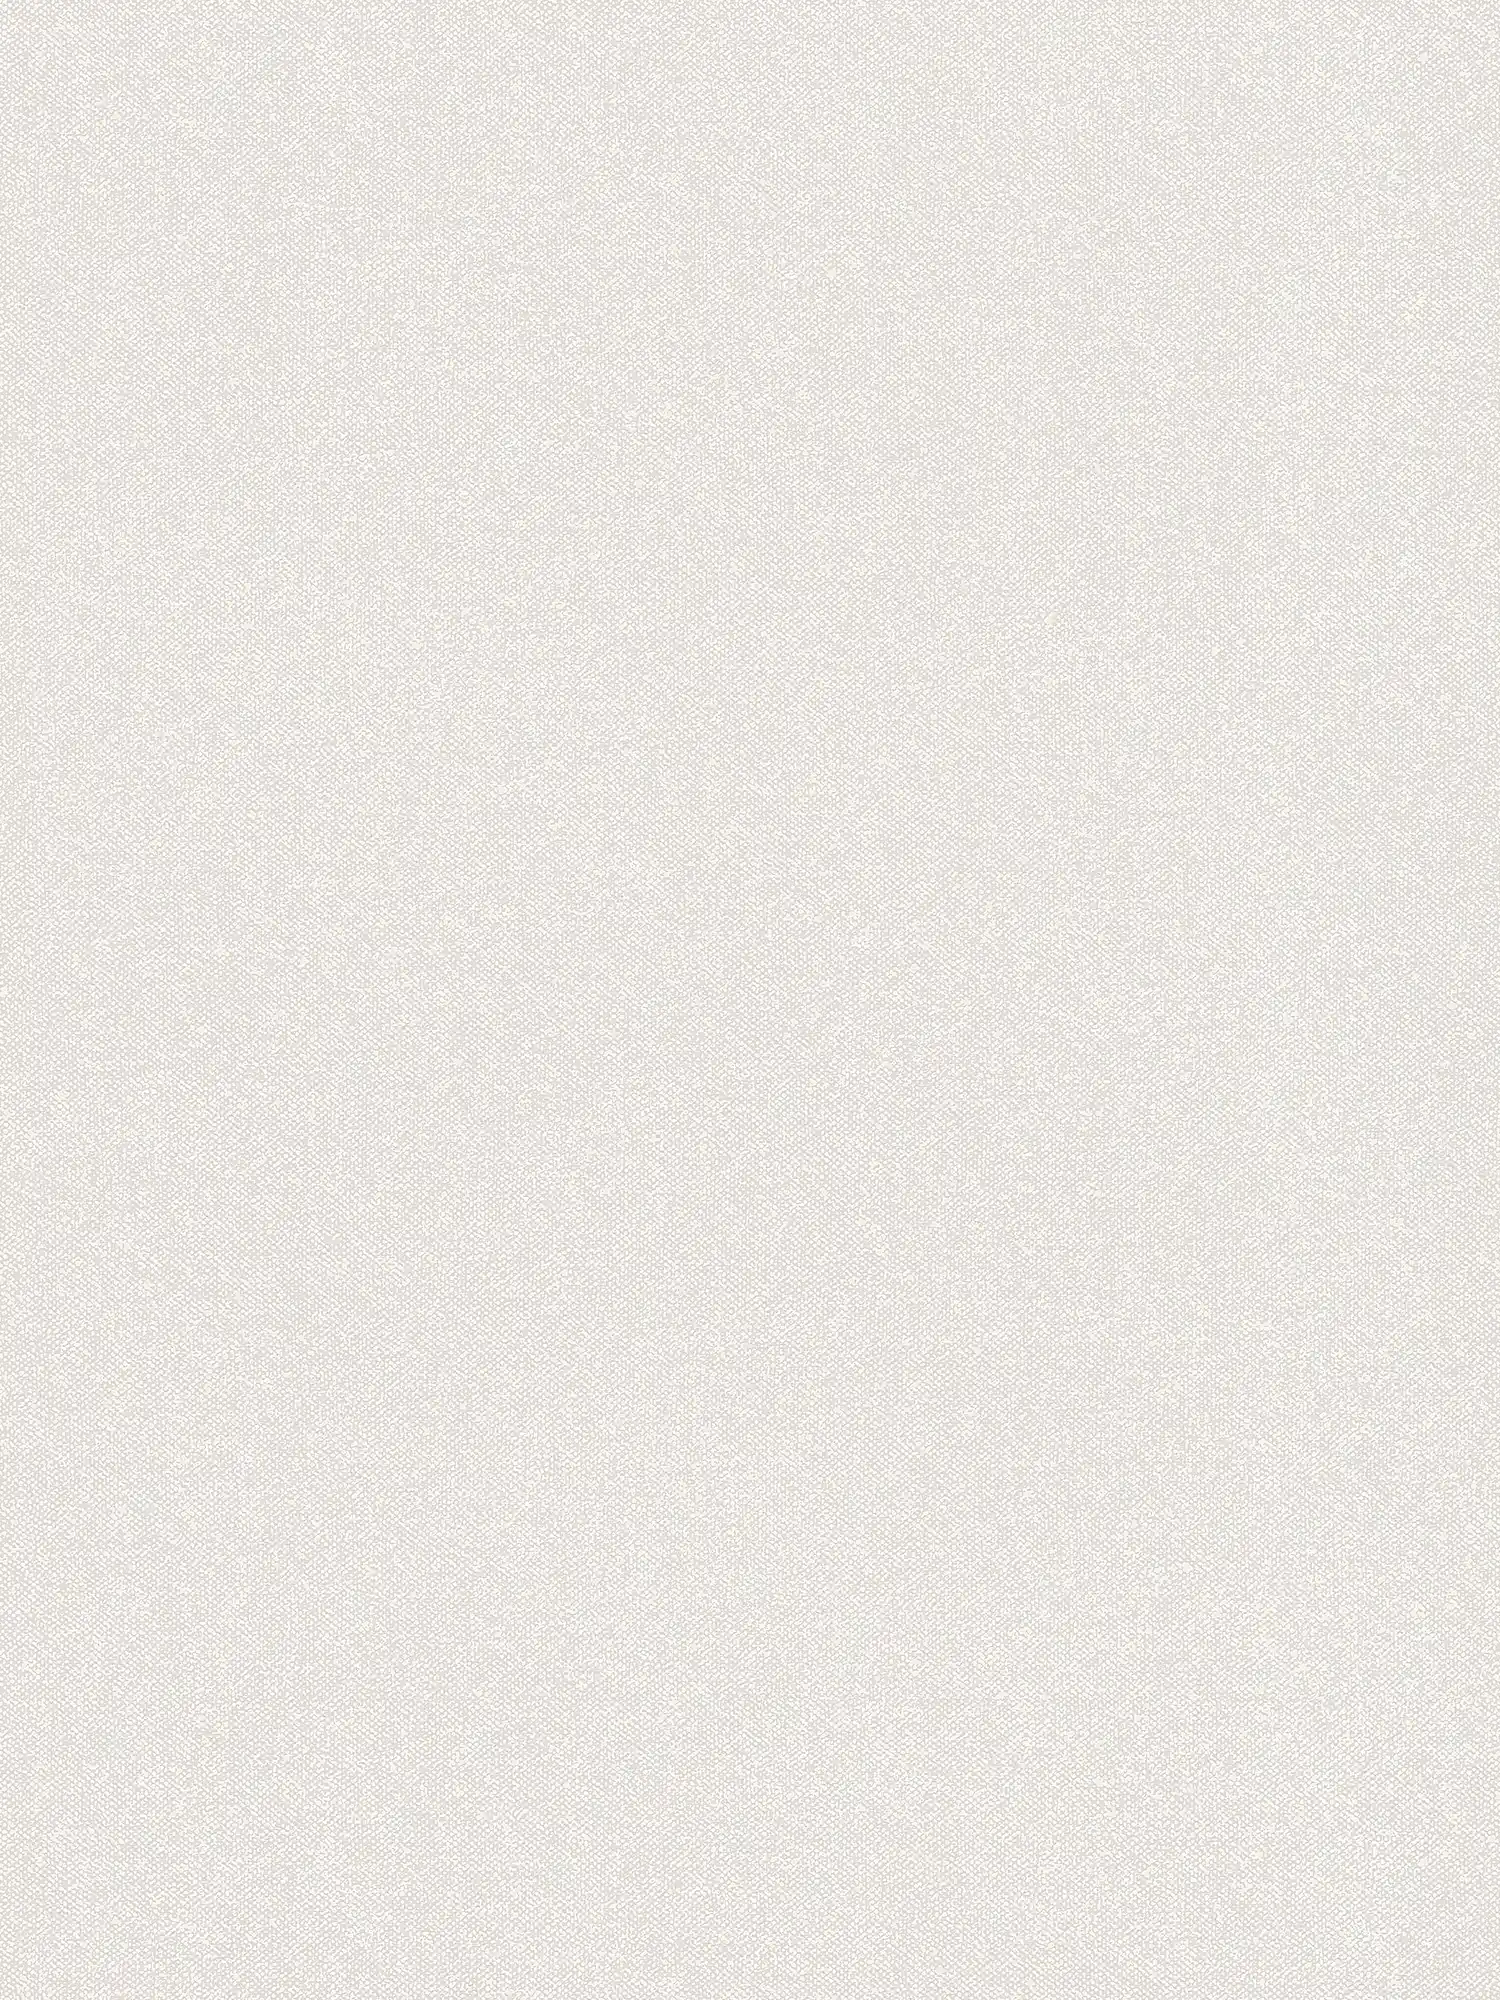 Carta da parati testurizzata a quadri con effetto lino - crema, grigio, bianco
